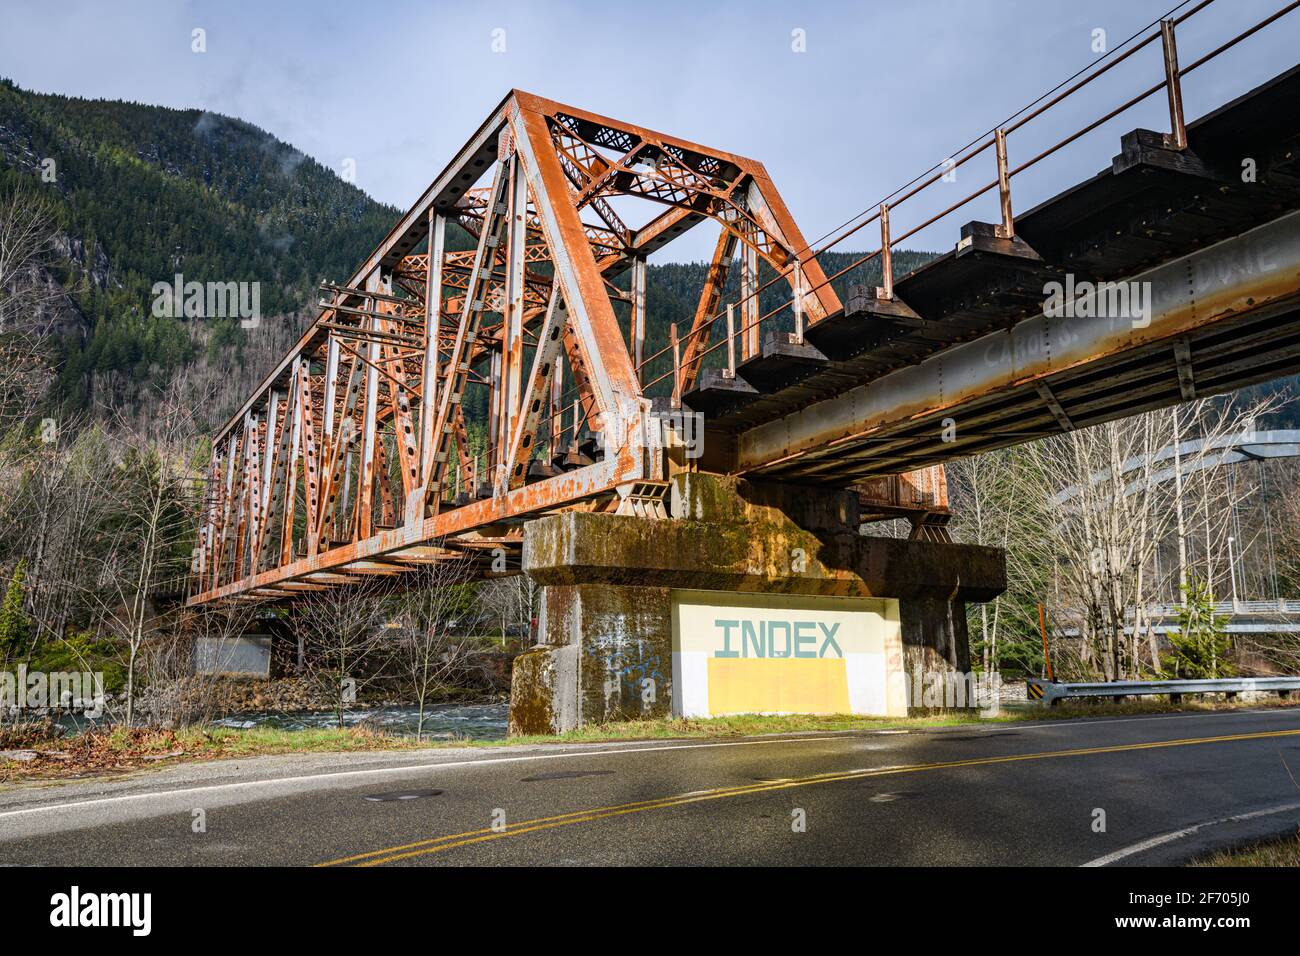 Panneau peint pour la ville de Index dans l'État de Washington Sous un pont ferroviaire sur l'ancien chemin de fer Great Northern Route maintenant exploitée par la société BNSF Banque D'Images